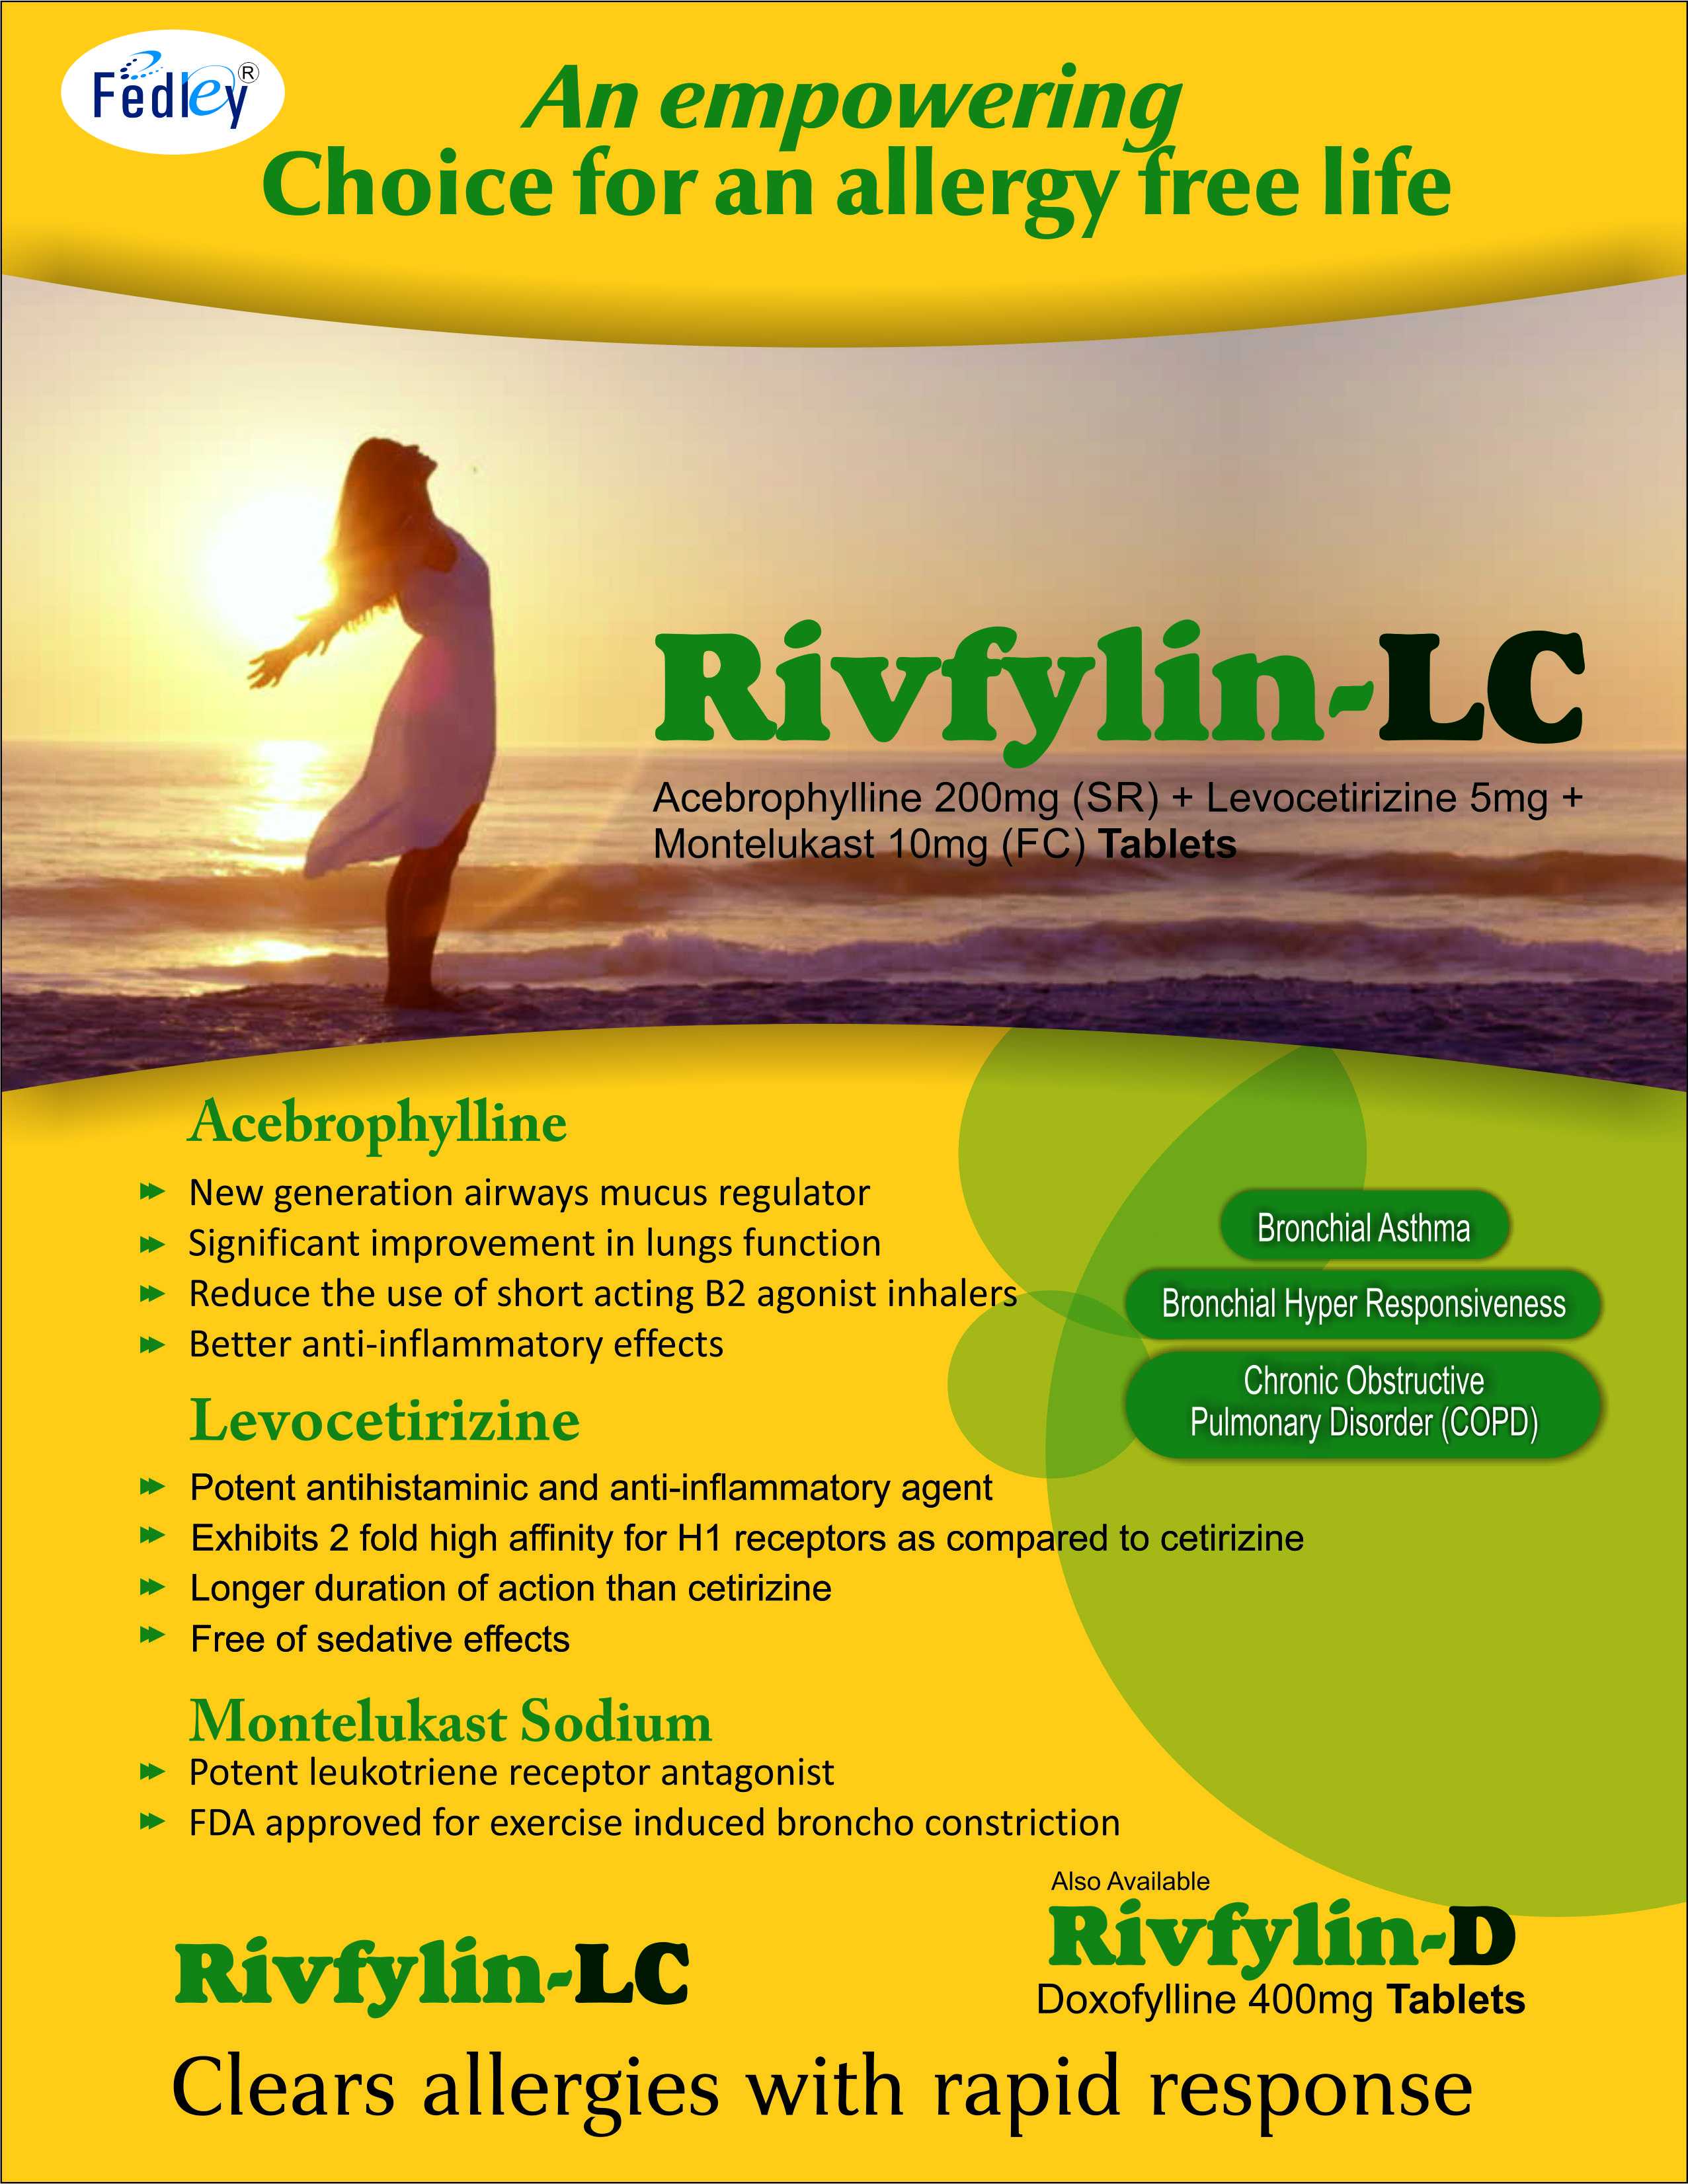 RIVFYLIN-LC